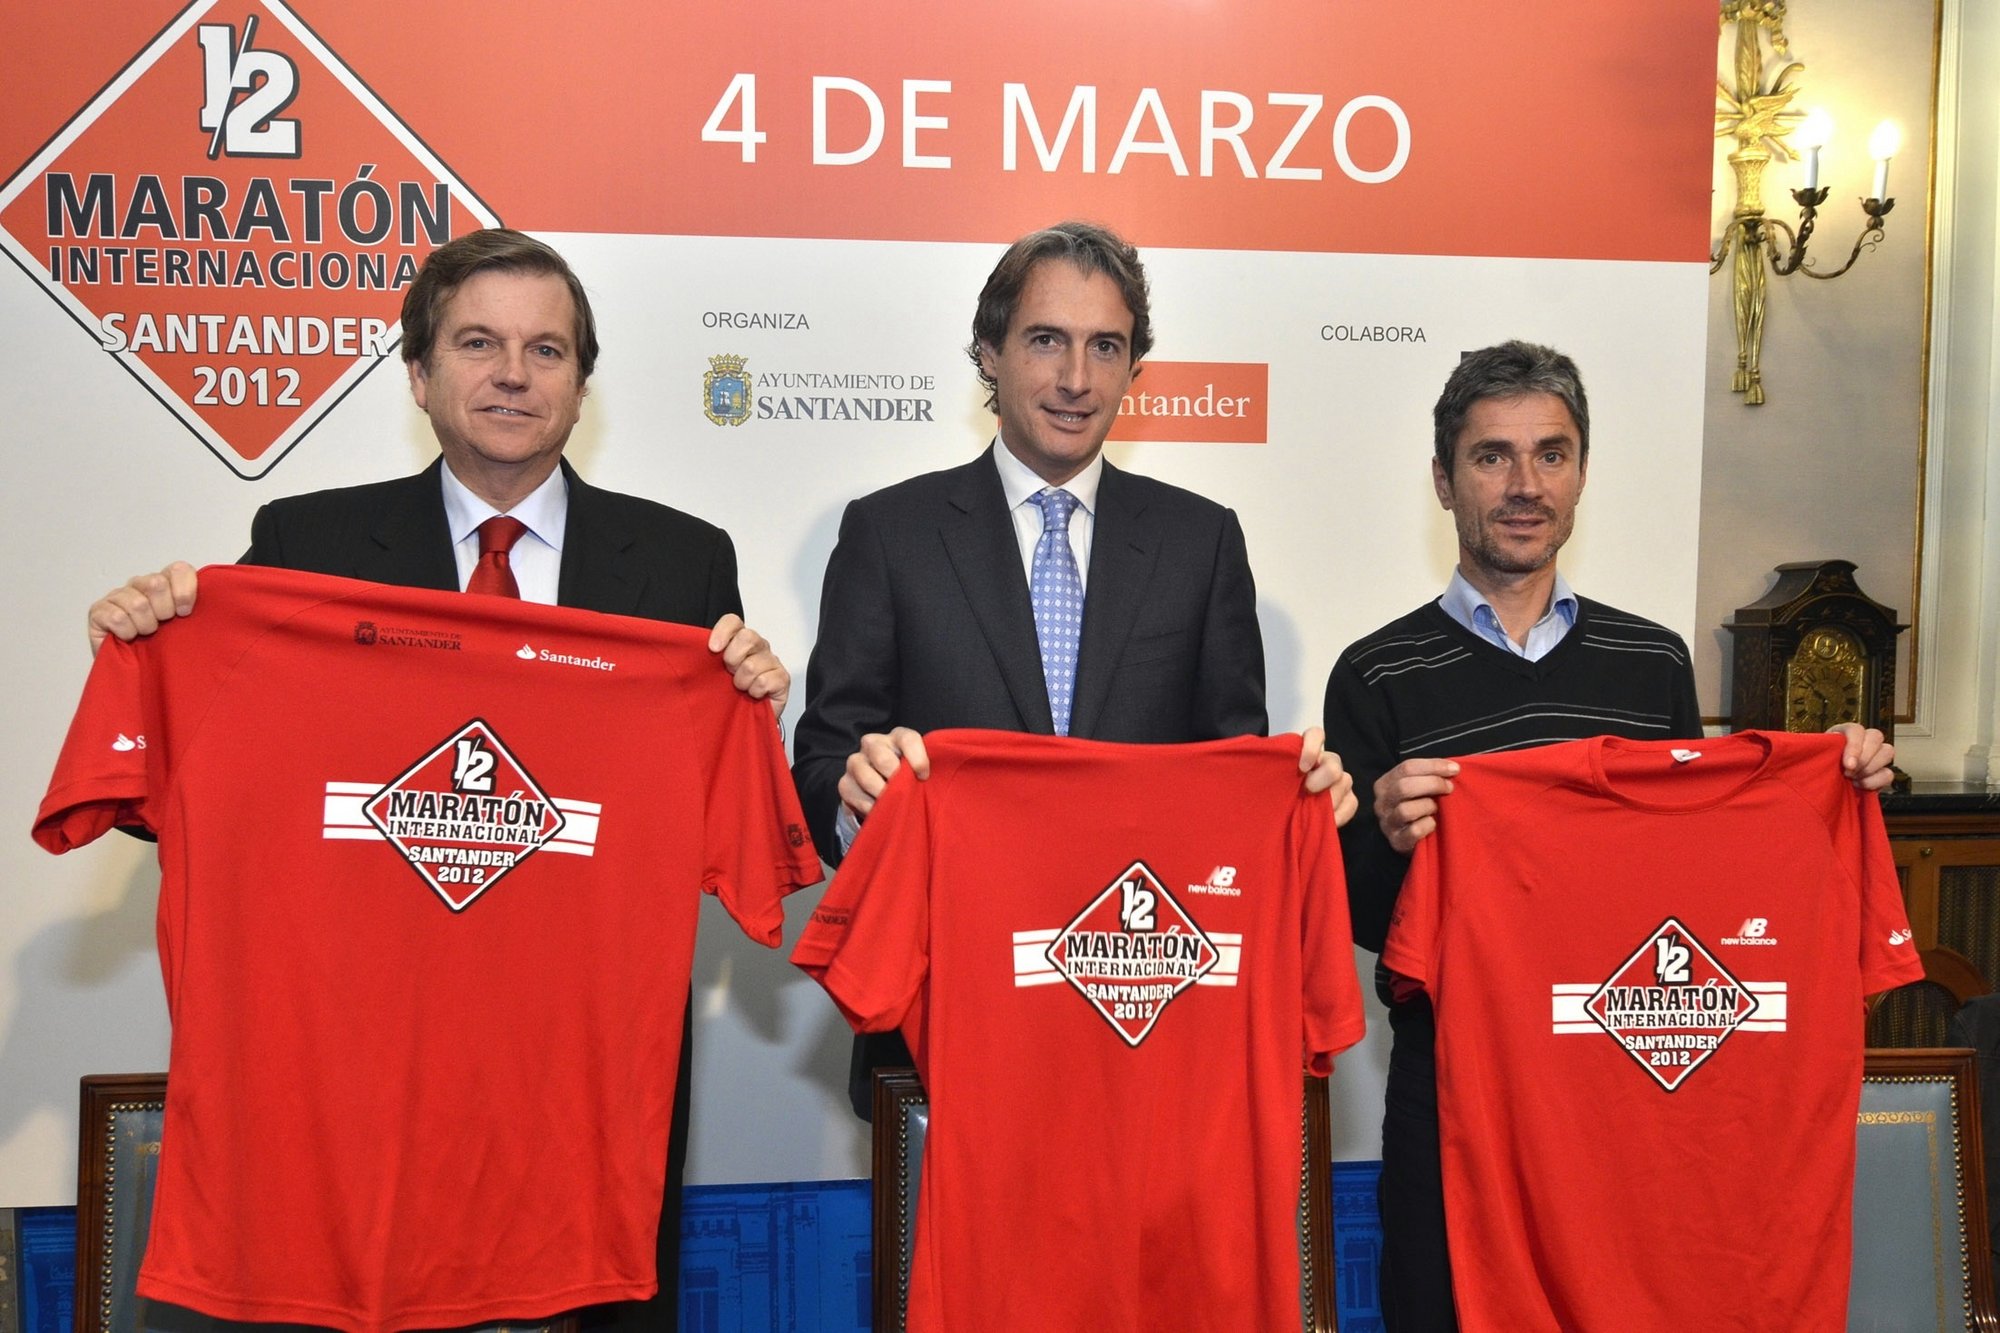 Más de 1.100 corredores se han inscrito ya en el Medio Maratón Internacional de Santander